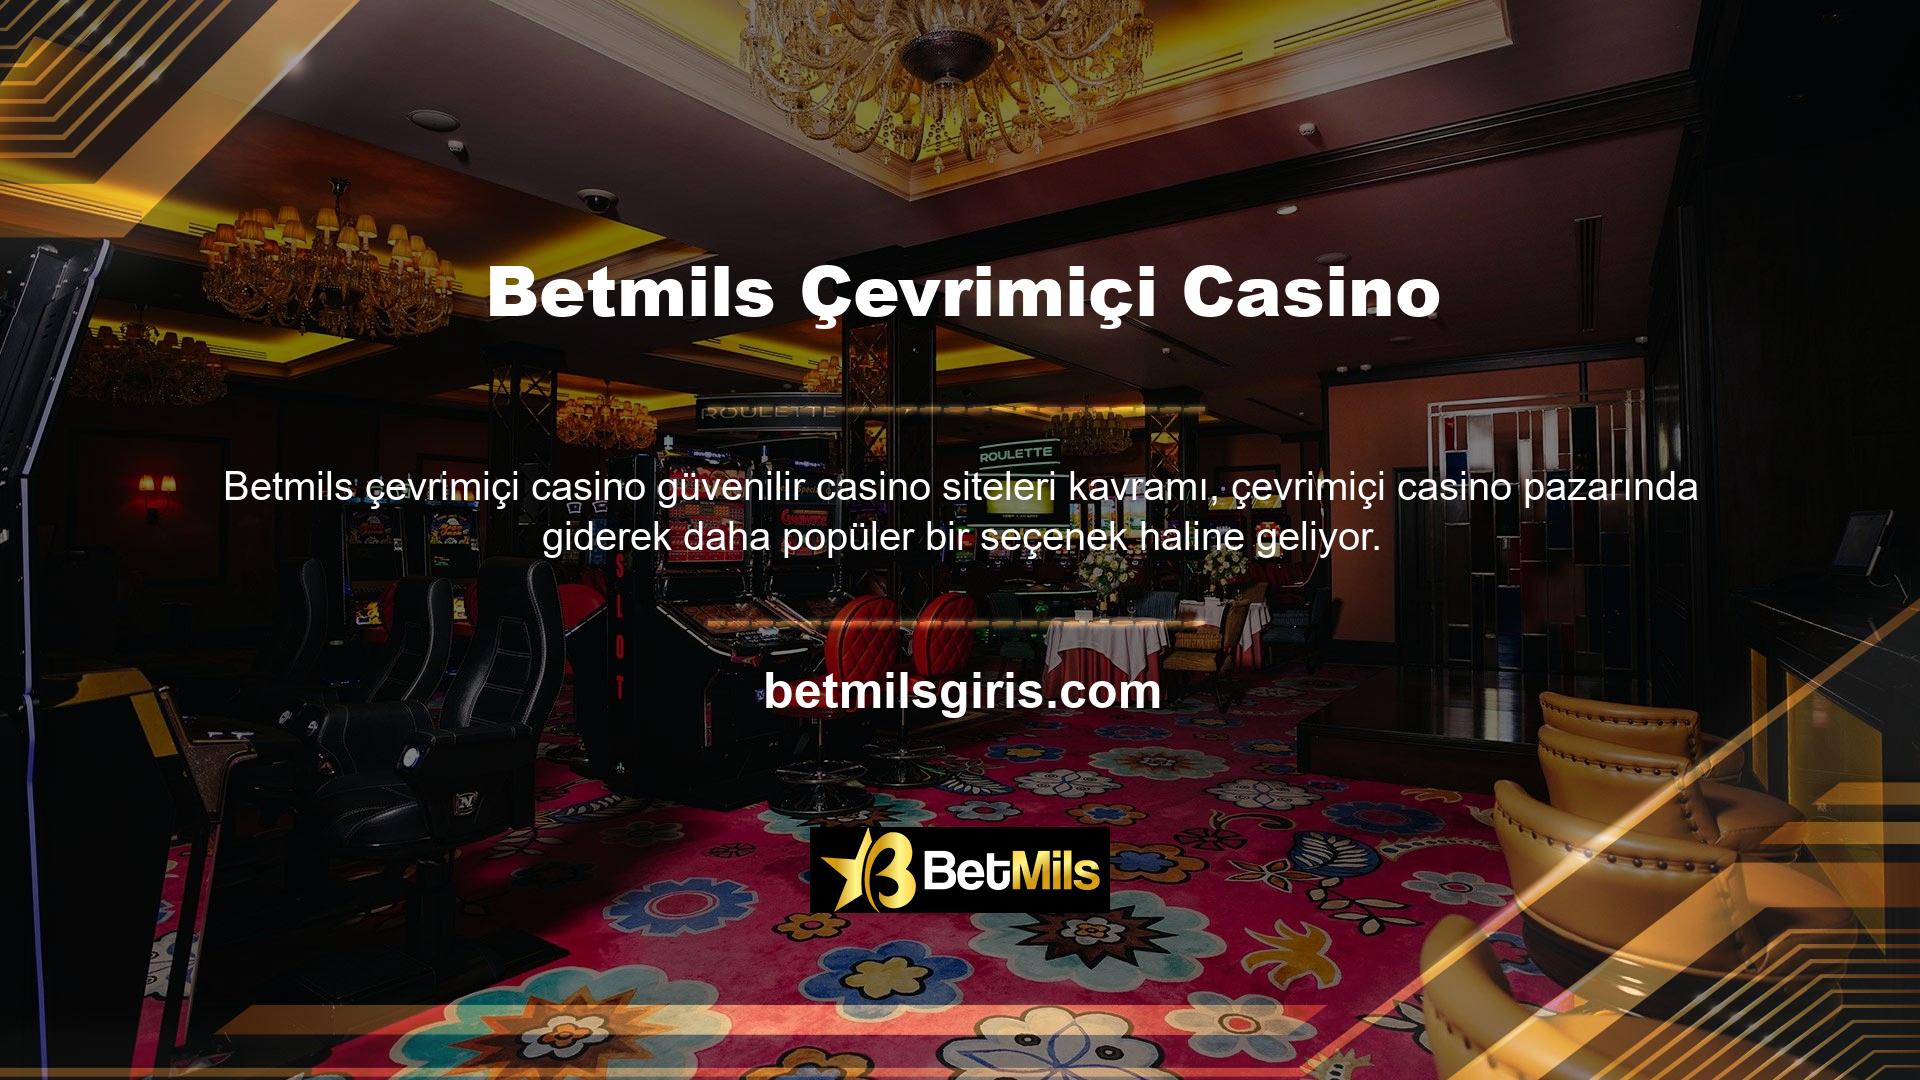 Güvenilir casino sitelerinin bu alanında uzmanlaşmanızı sağlayan bir sistem oluşturarak, ihtiyacınız olan oyun ve casino kredilerini bulma şansınız daha yüksek olacaktır